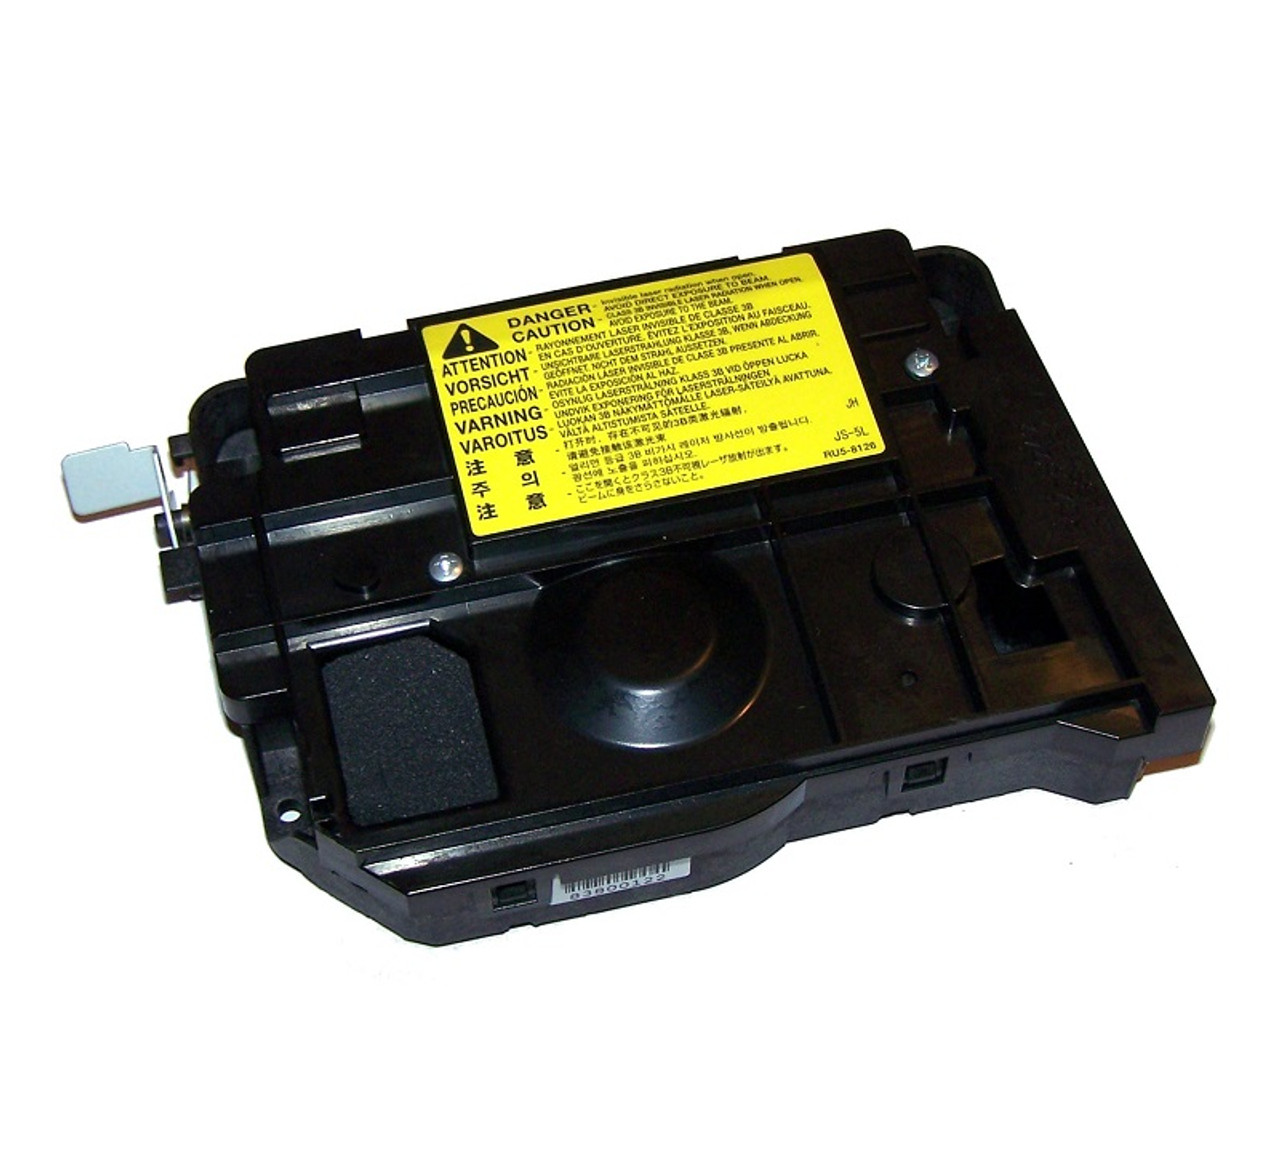 RM1-1521-000CN - HP Laser Scanner for LaserJet 2410 / 2420 / 2430 Series aka RM1-1153